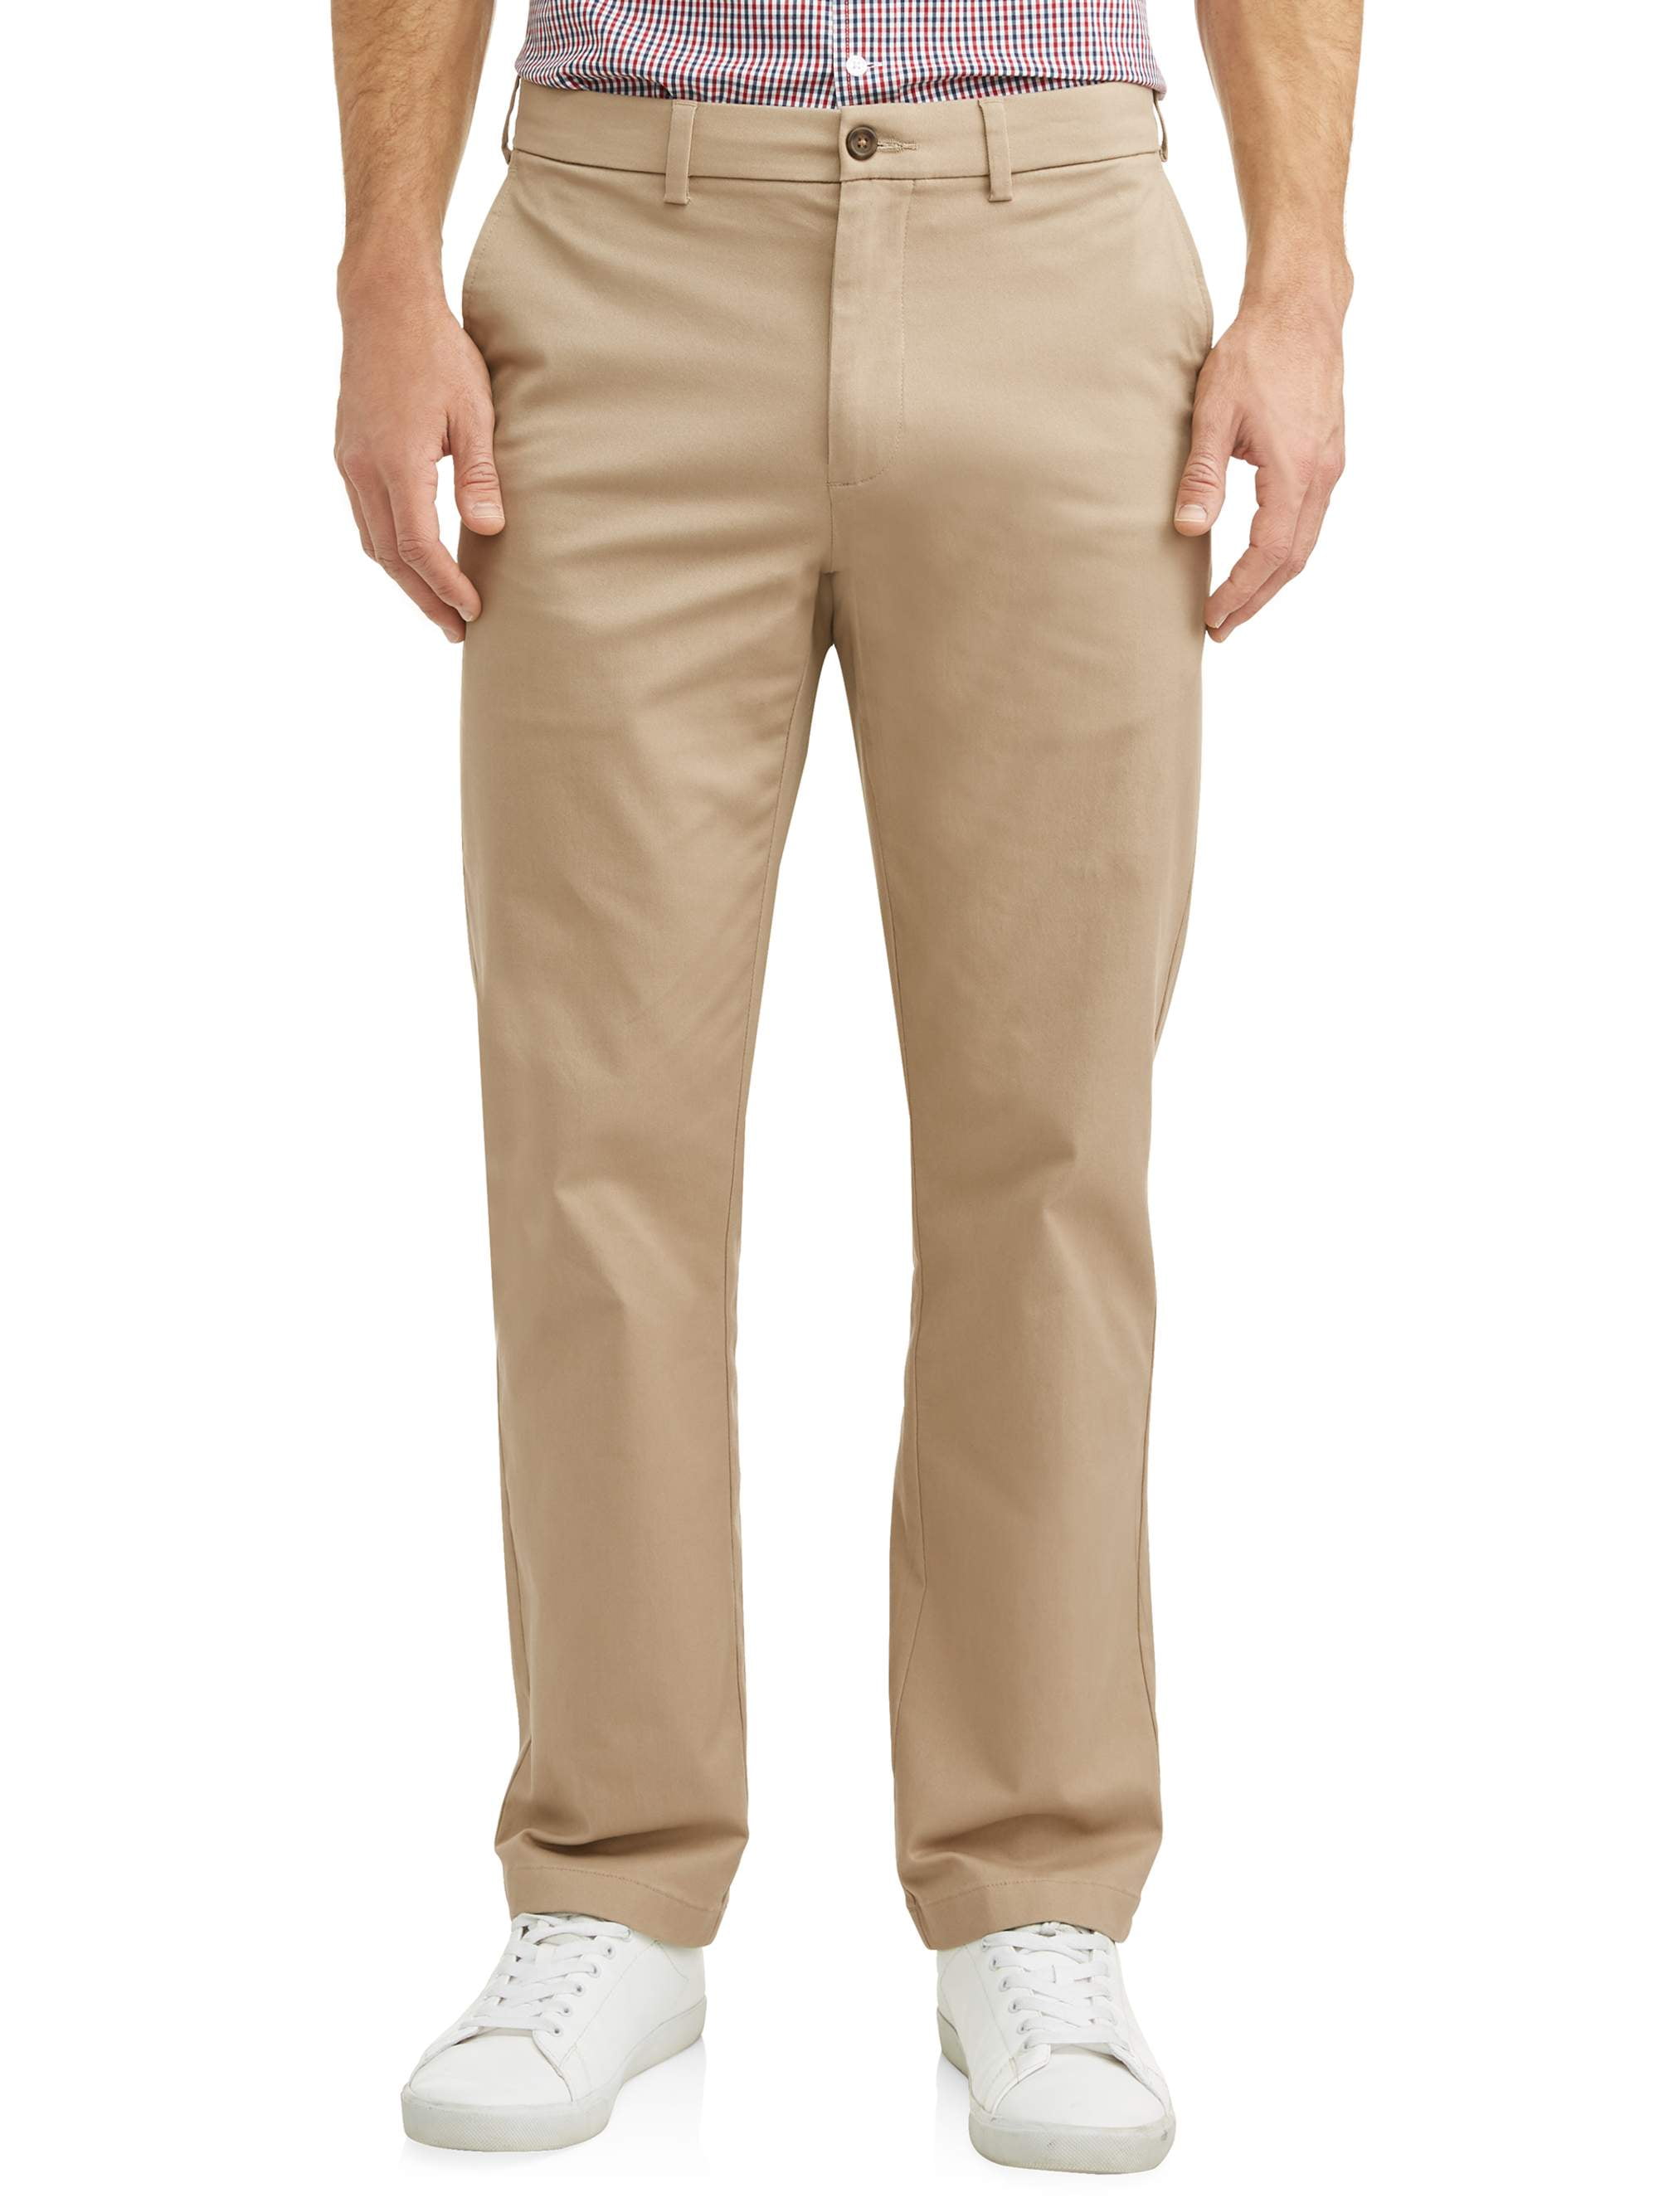 George Men's and Big Men's Premium Regular Fit Khaki Pant